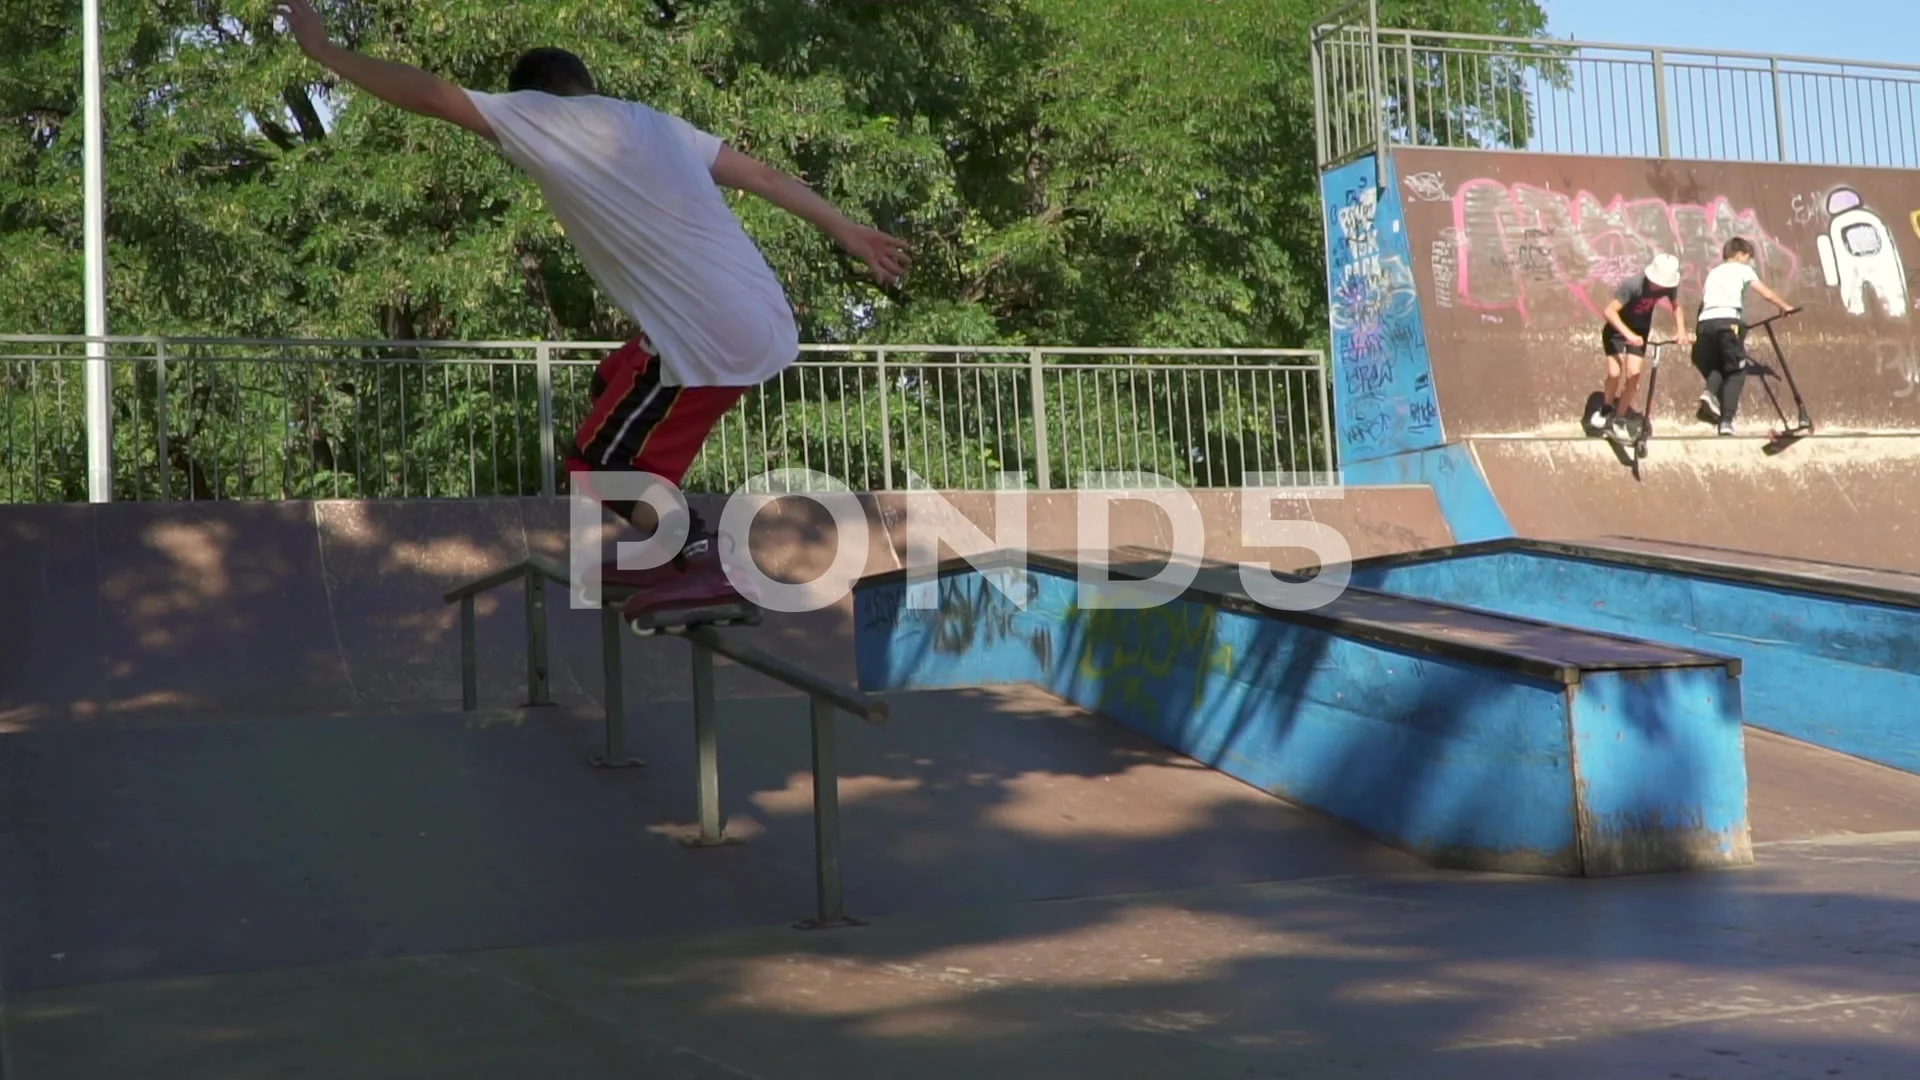 https://images.pond5.com/man-rollerblades-ramp-skate-park-footage-220034155_prevstill.jpeg